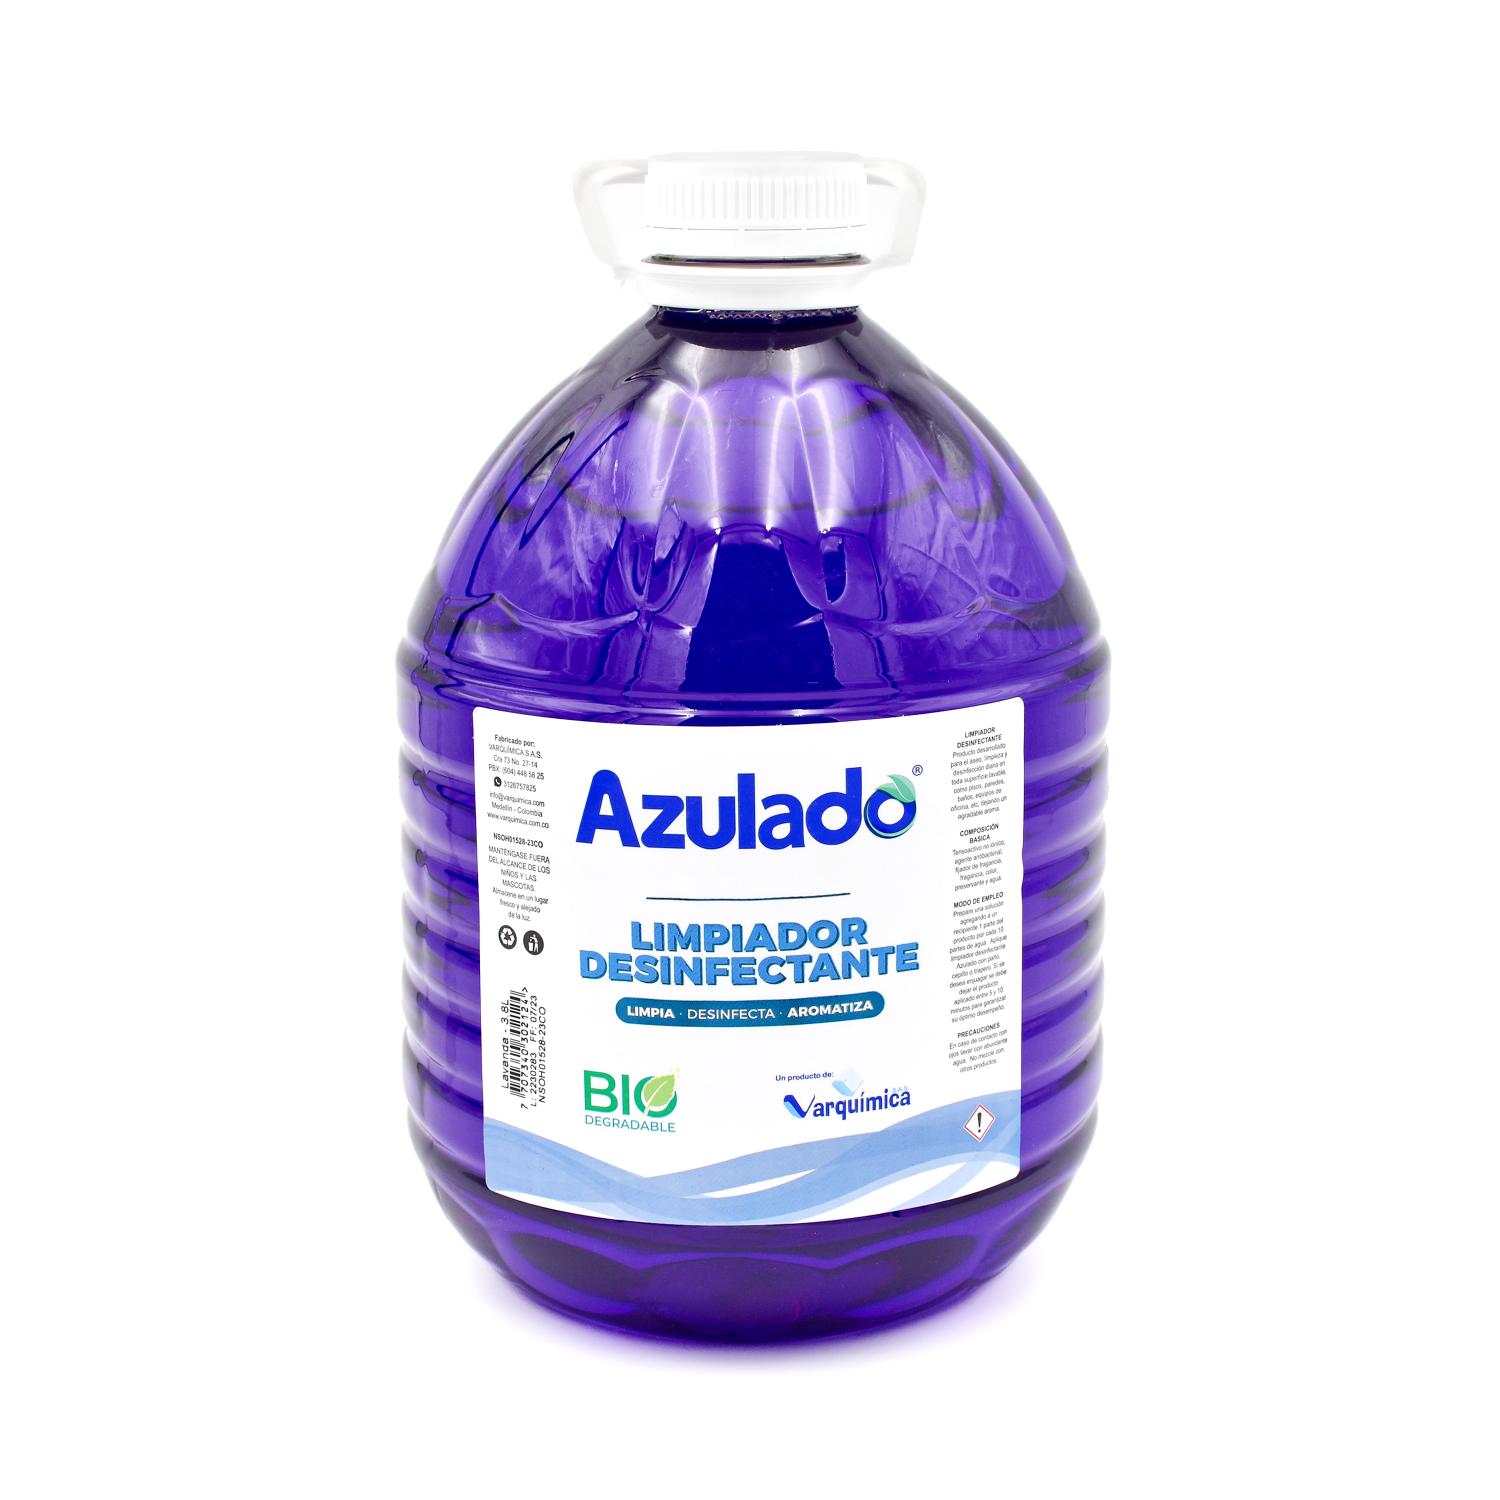 Desinfectante X Galon Lavanda Azulado (4)